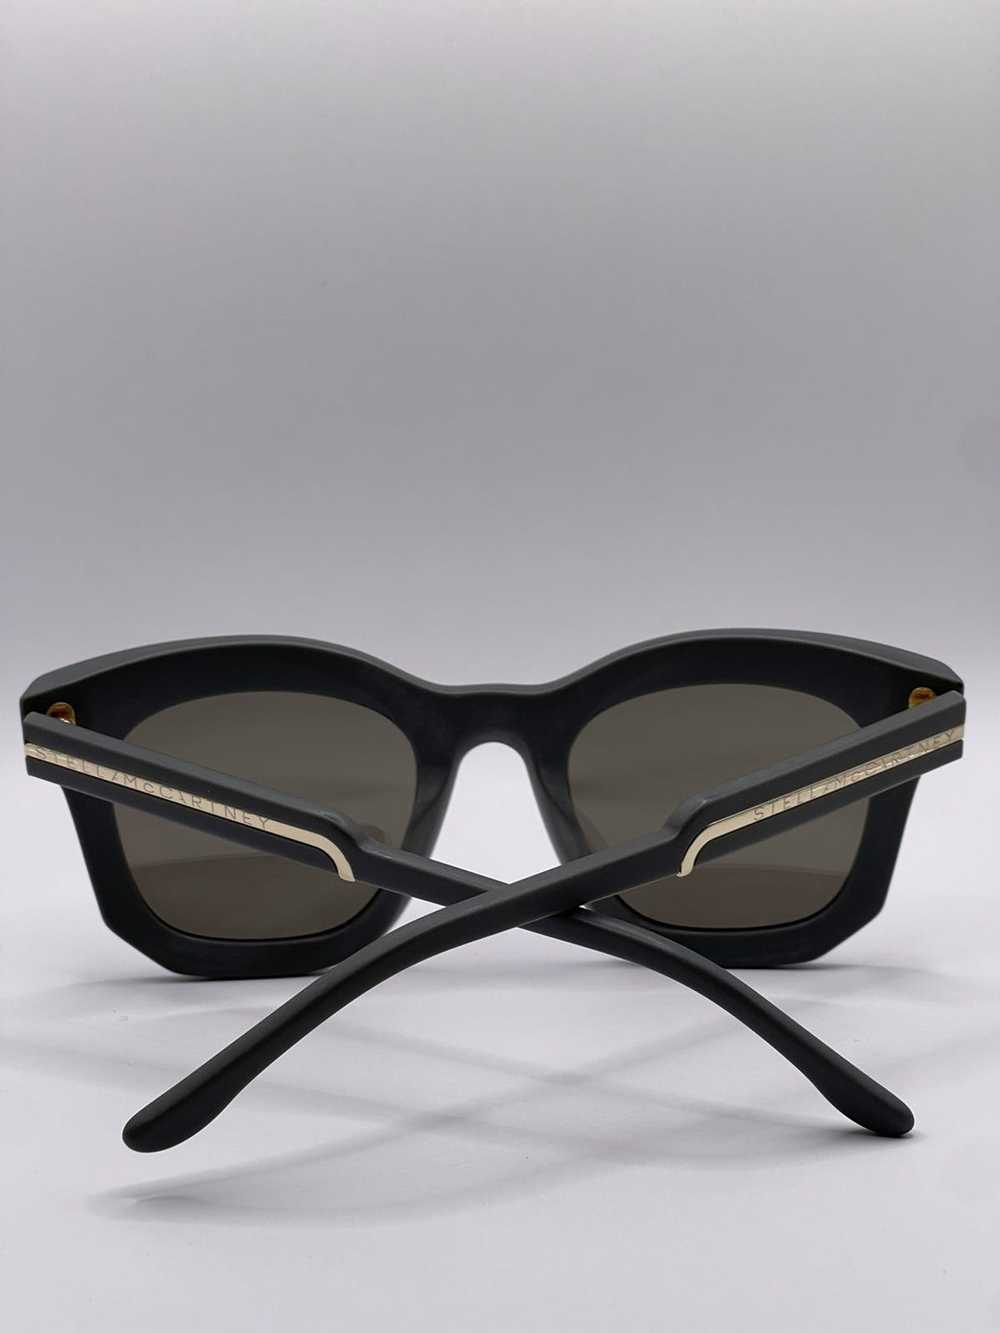 Stella McCartney Stella Mccartney Sunglasses - image 5